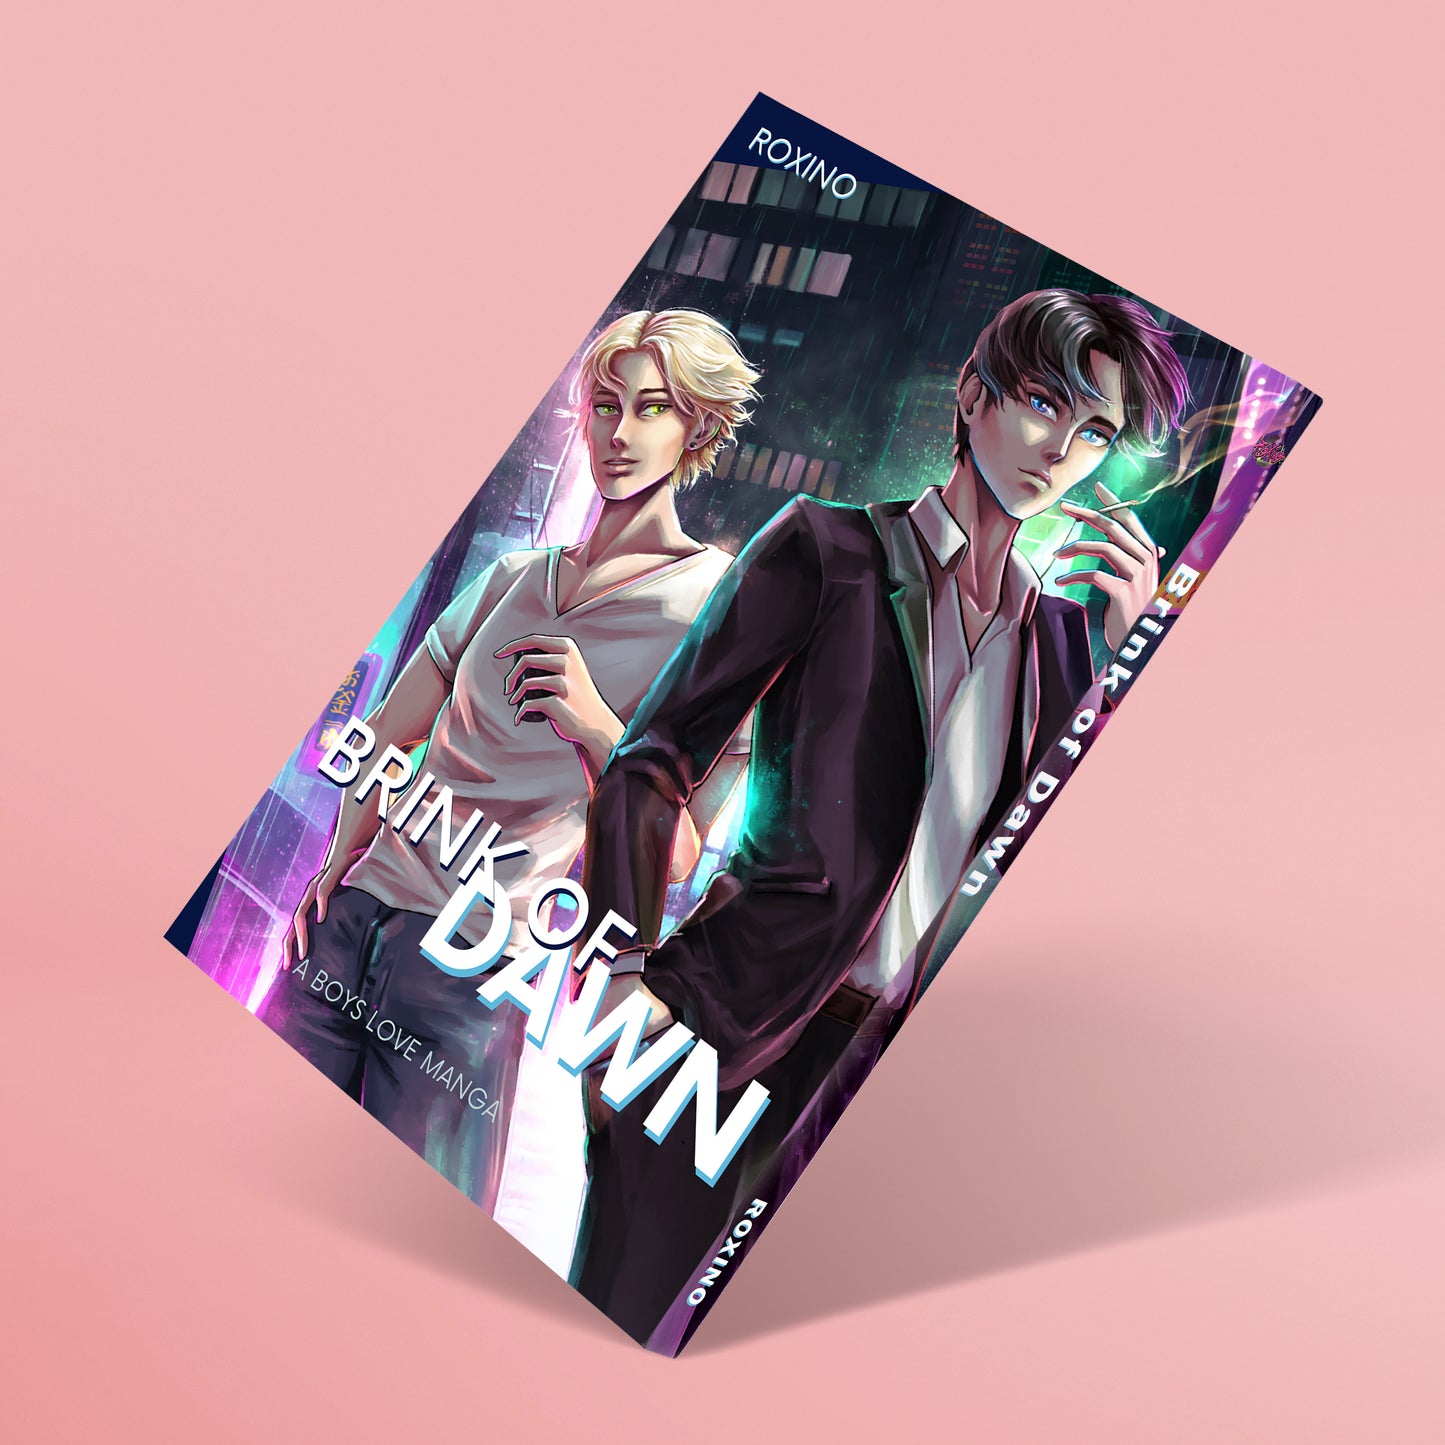 Brink of Dawn (Manga)